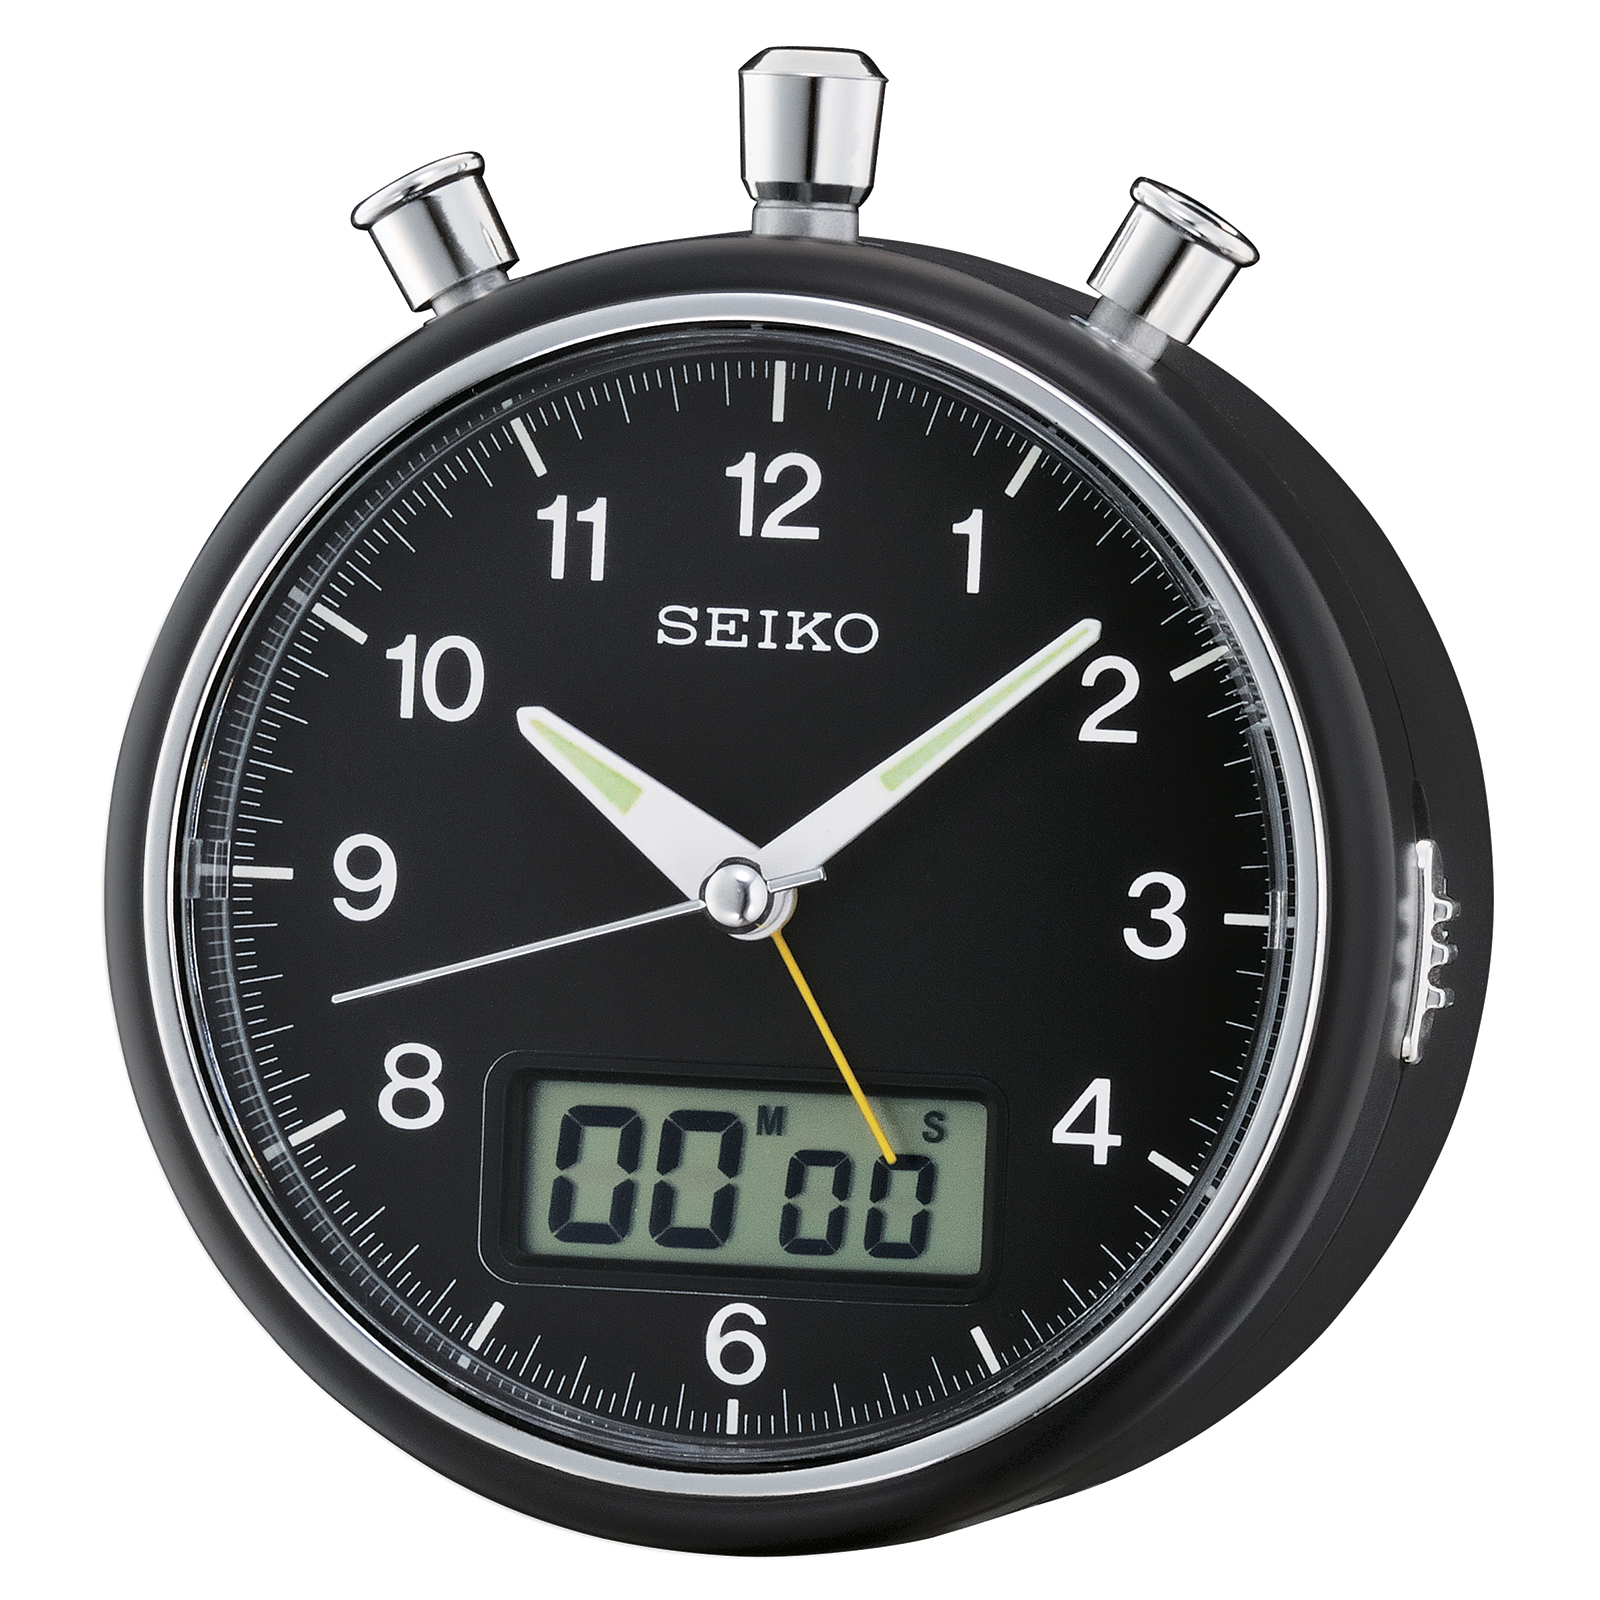 Seiko Alarm Clocks UPC & Barcode | upcitemdb.com